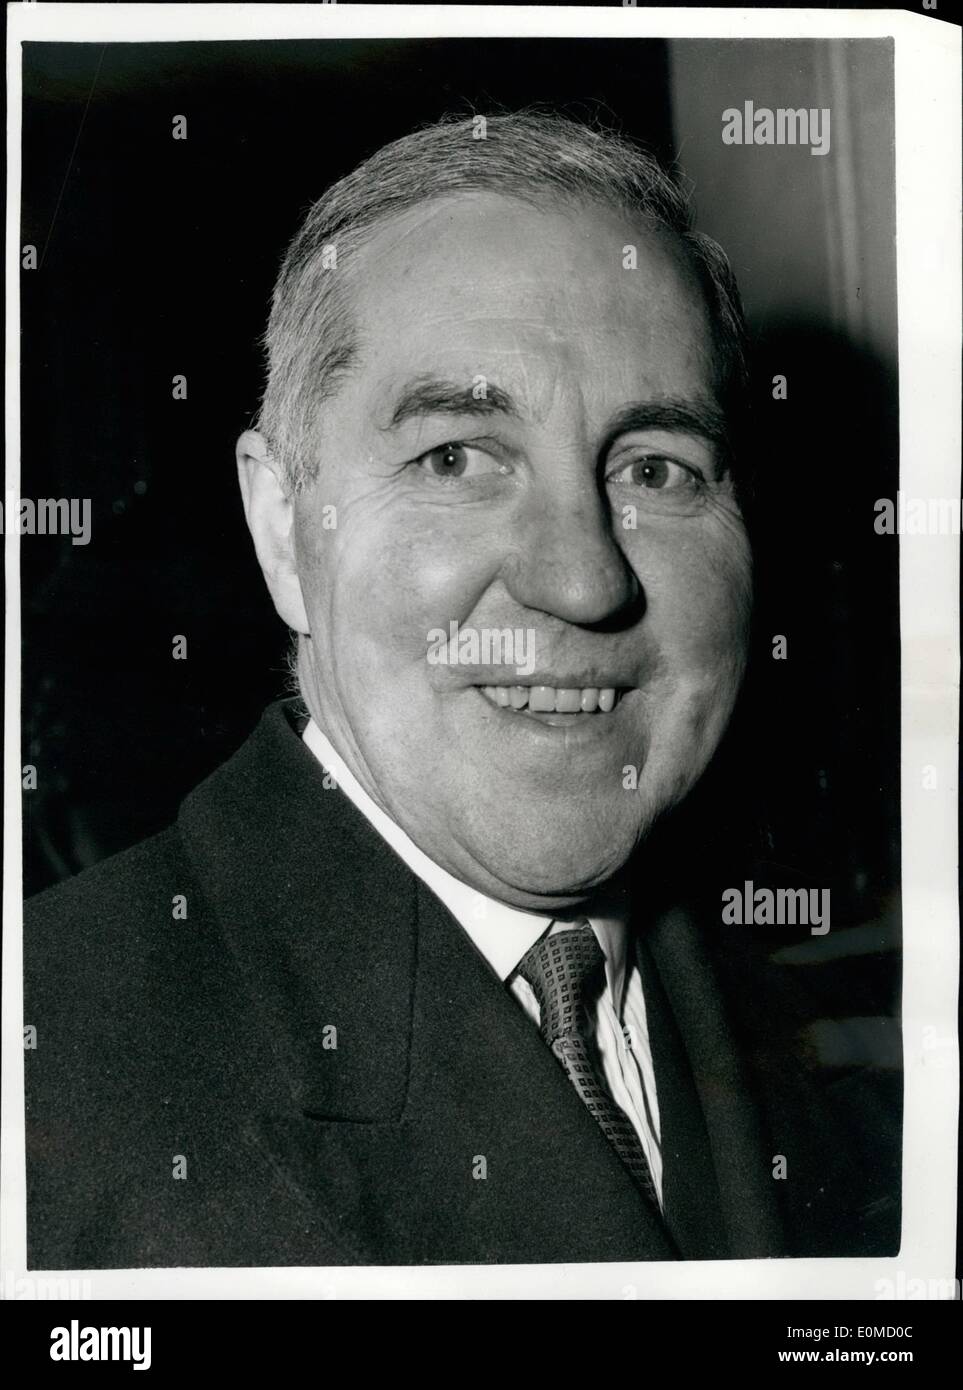 Ottobre 10, 1954 - Trieste accordo firmato: foto mostra il sig. Henry Brooke, il nuovo ministro degli alloggi e governo locale visto lasciare n. 11 di Downing street questo pomeriggio. Foto Stock